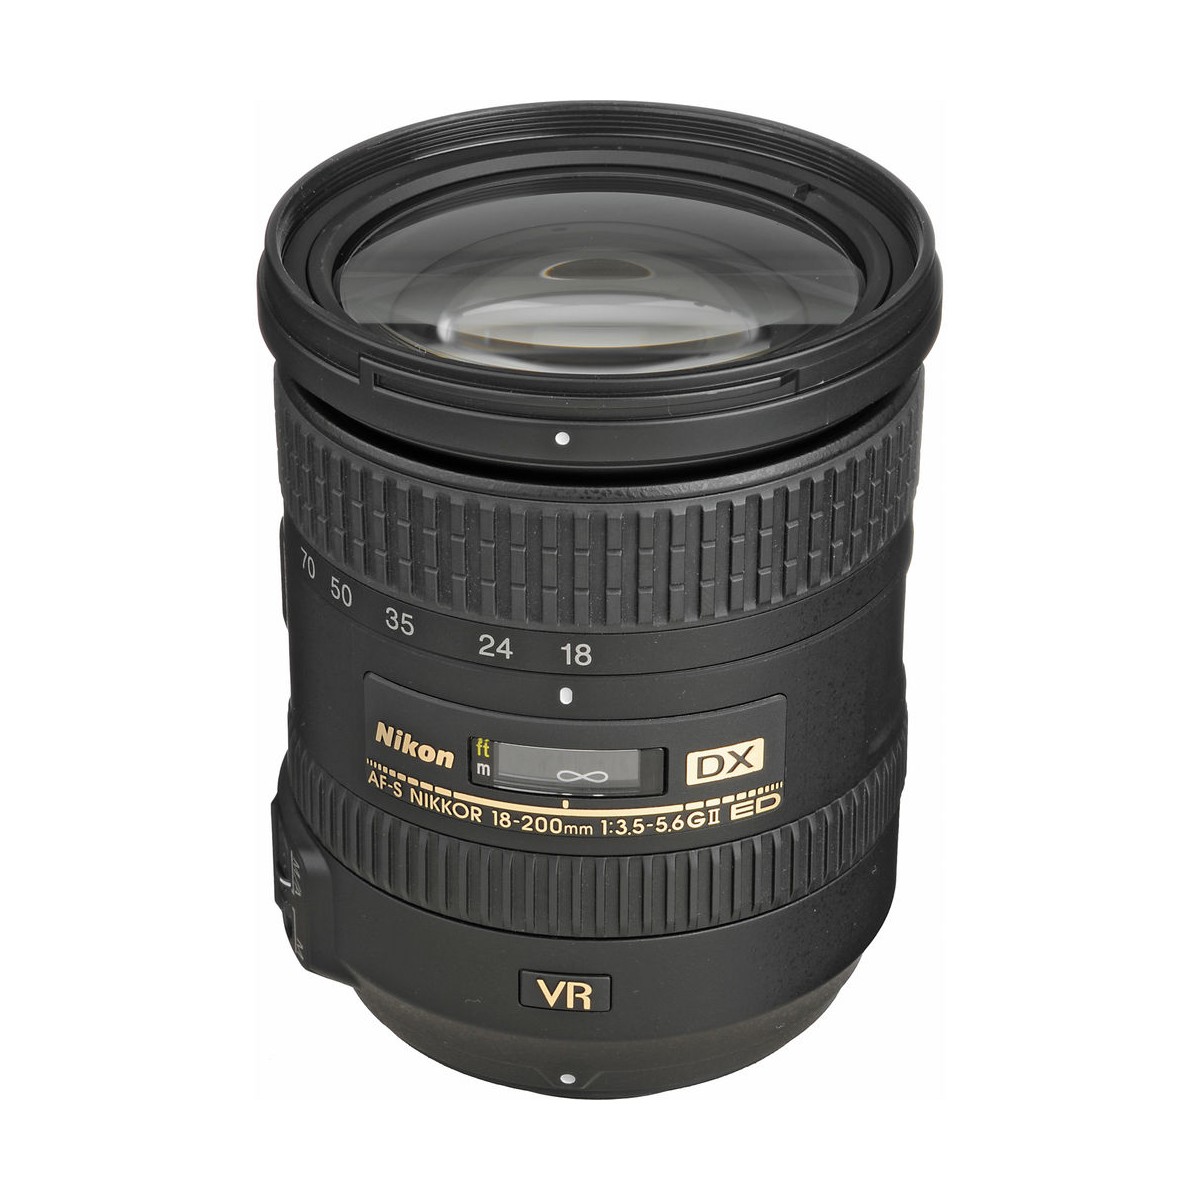 Nikon AF-S DX 18-200mm F3.5-5.6G ED VR - レンズ(ズーム)